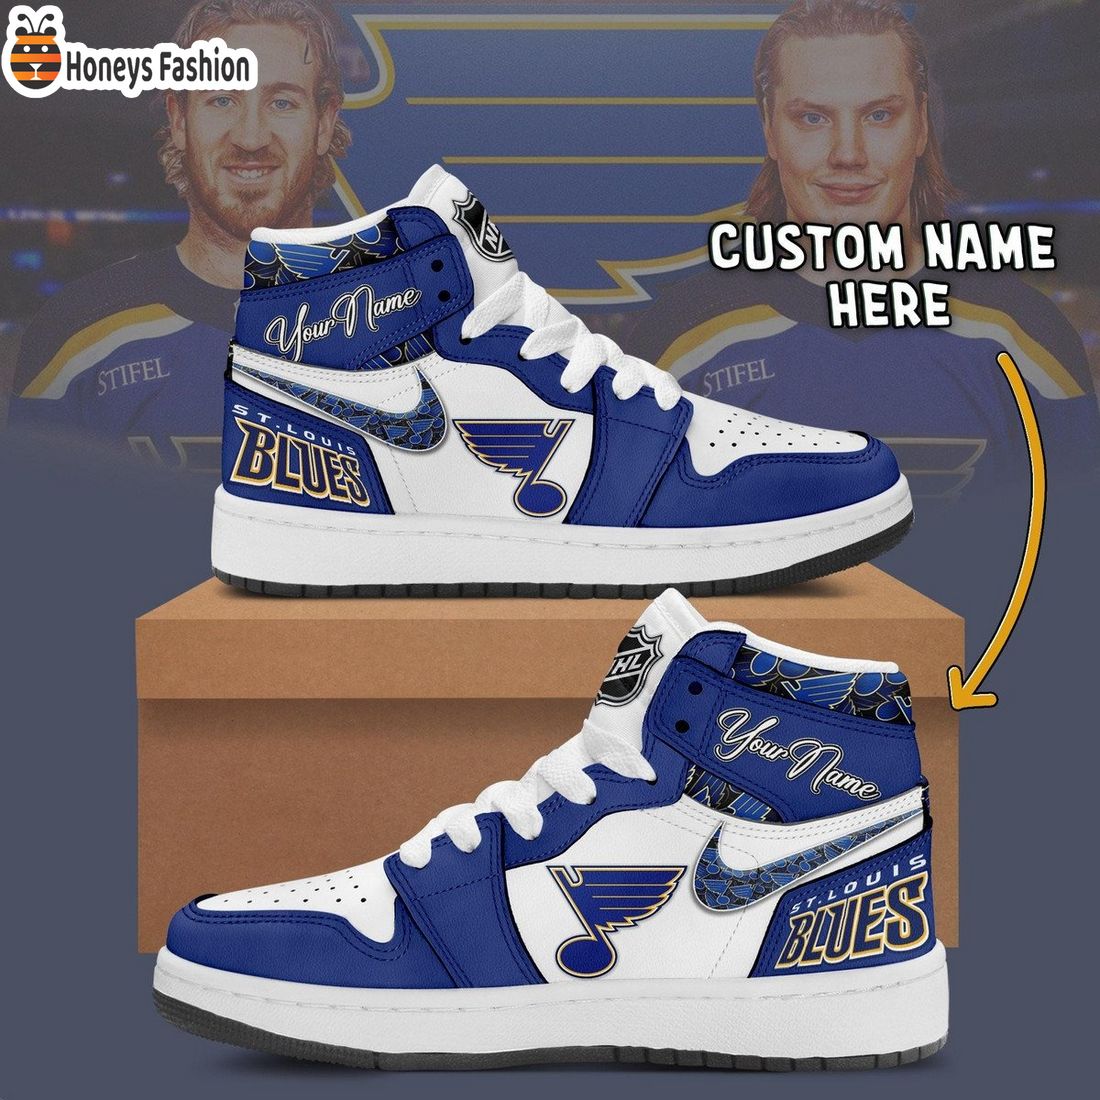 St. Louis Blues NHL Custom Name Air Jordan 1 Sneakers